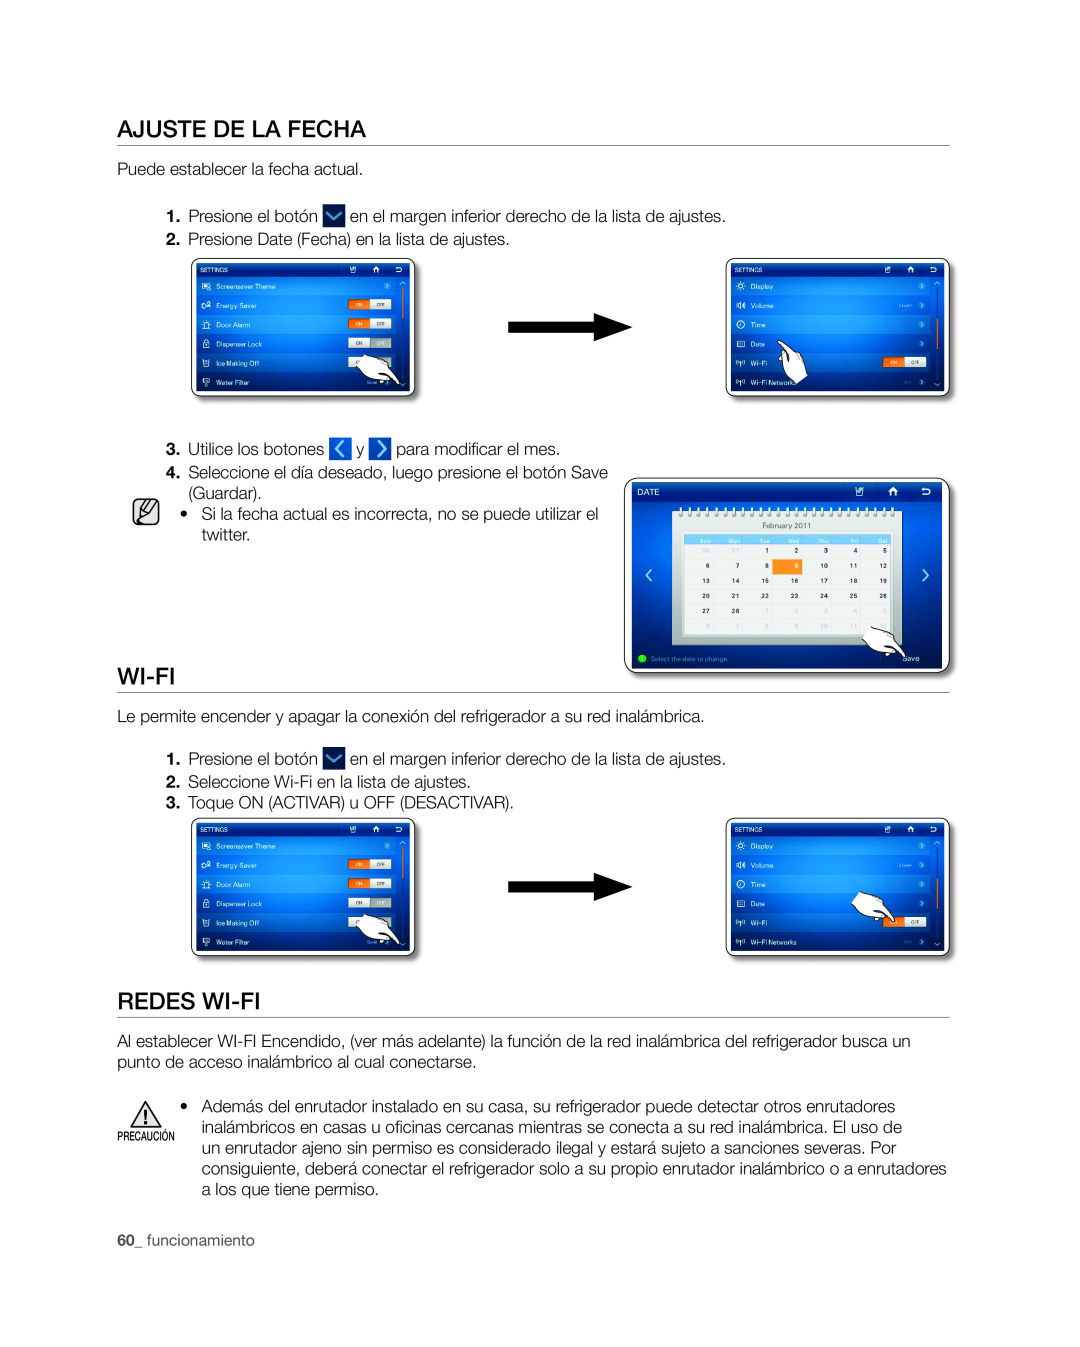 Samsung RSG309** user manual Ajuste de la fecha, Redes Wi-Fi, funcionamiento, pRECAUCIÓN 